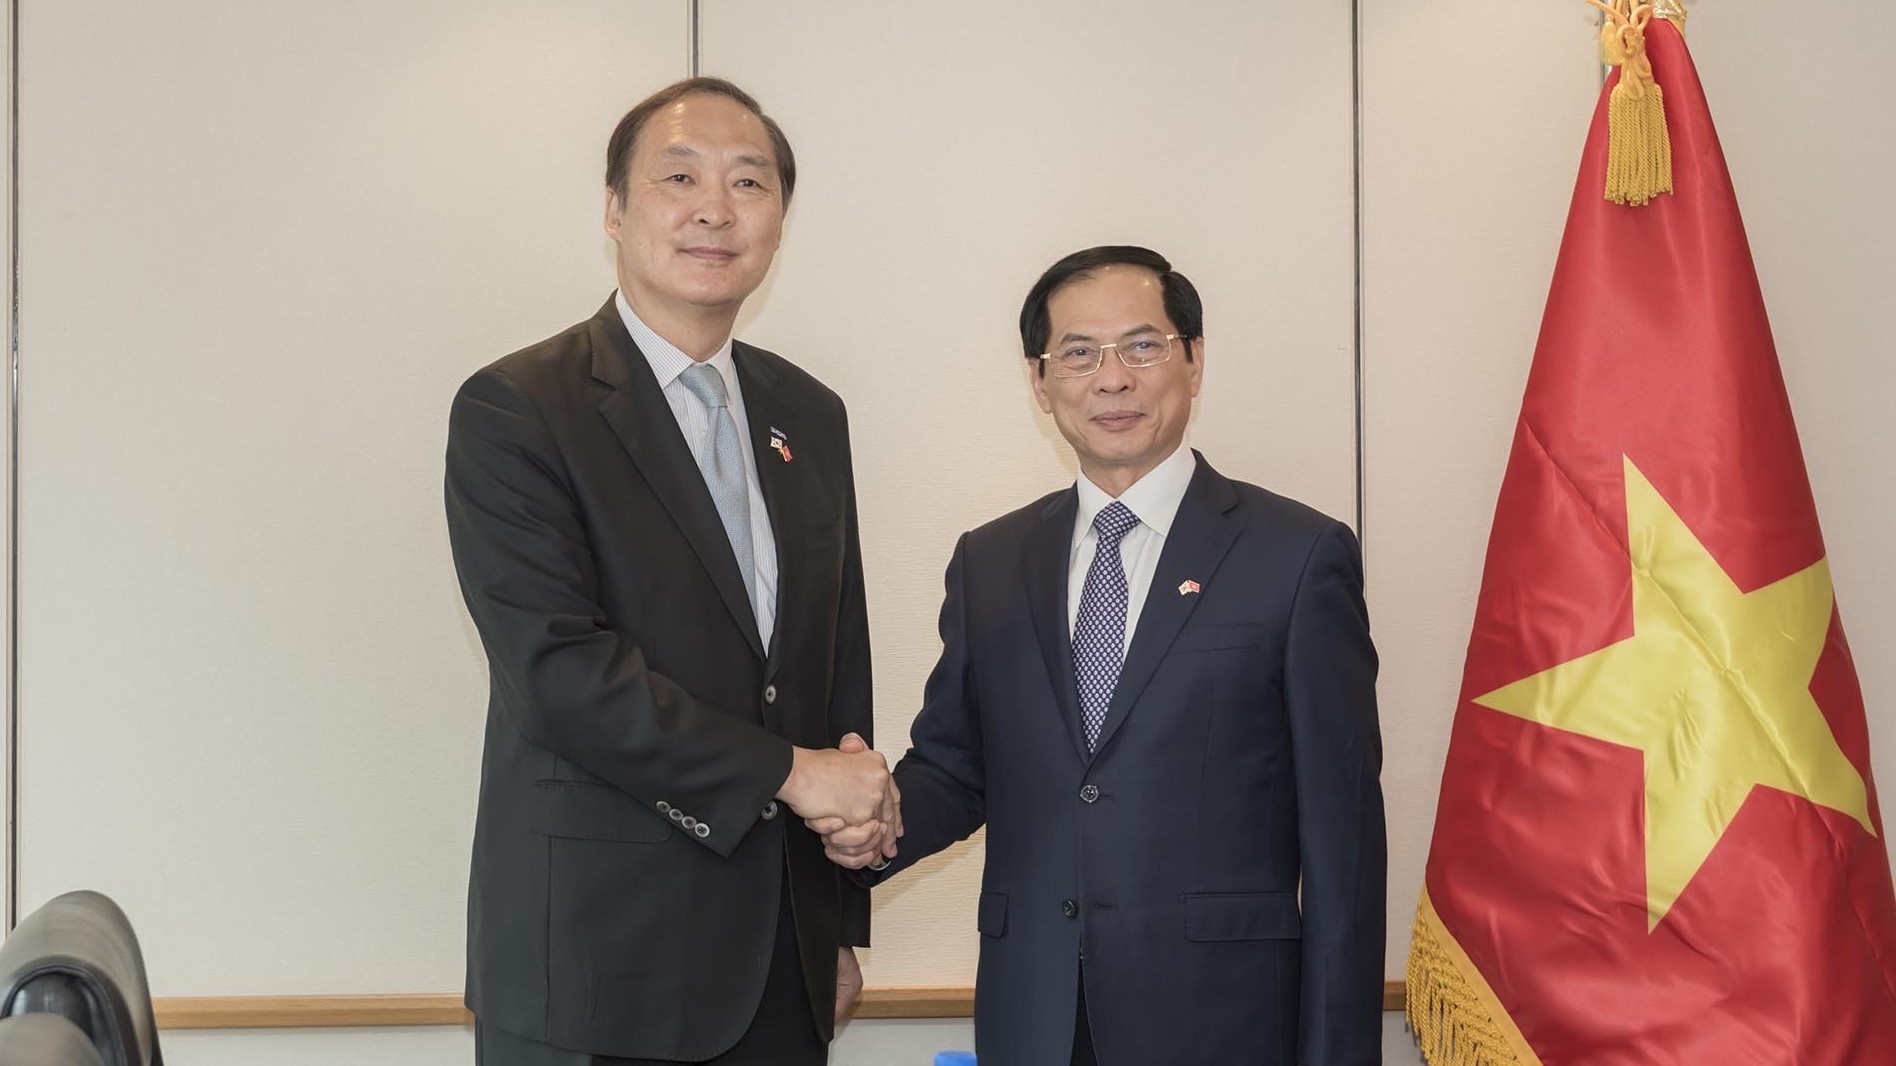 Chính phủ Hàn Quốc và KOICA luôn coi Việt Nam là đối tác chiến lược về hợp tác ODA